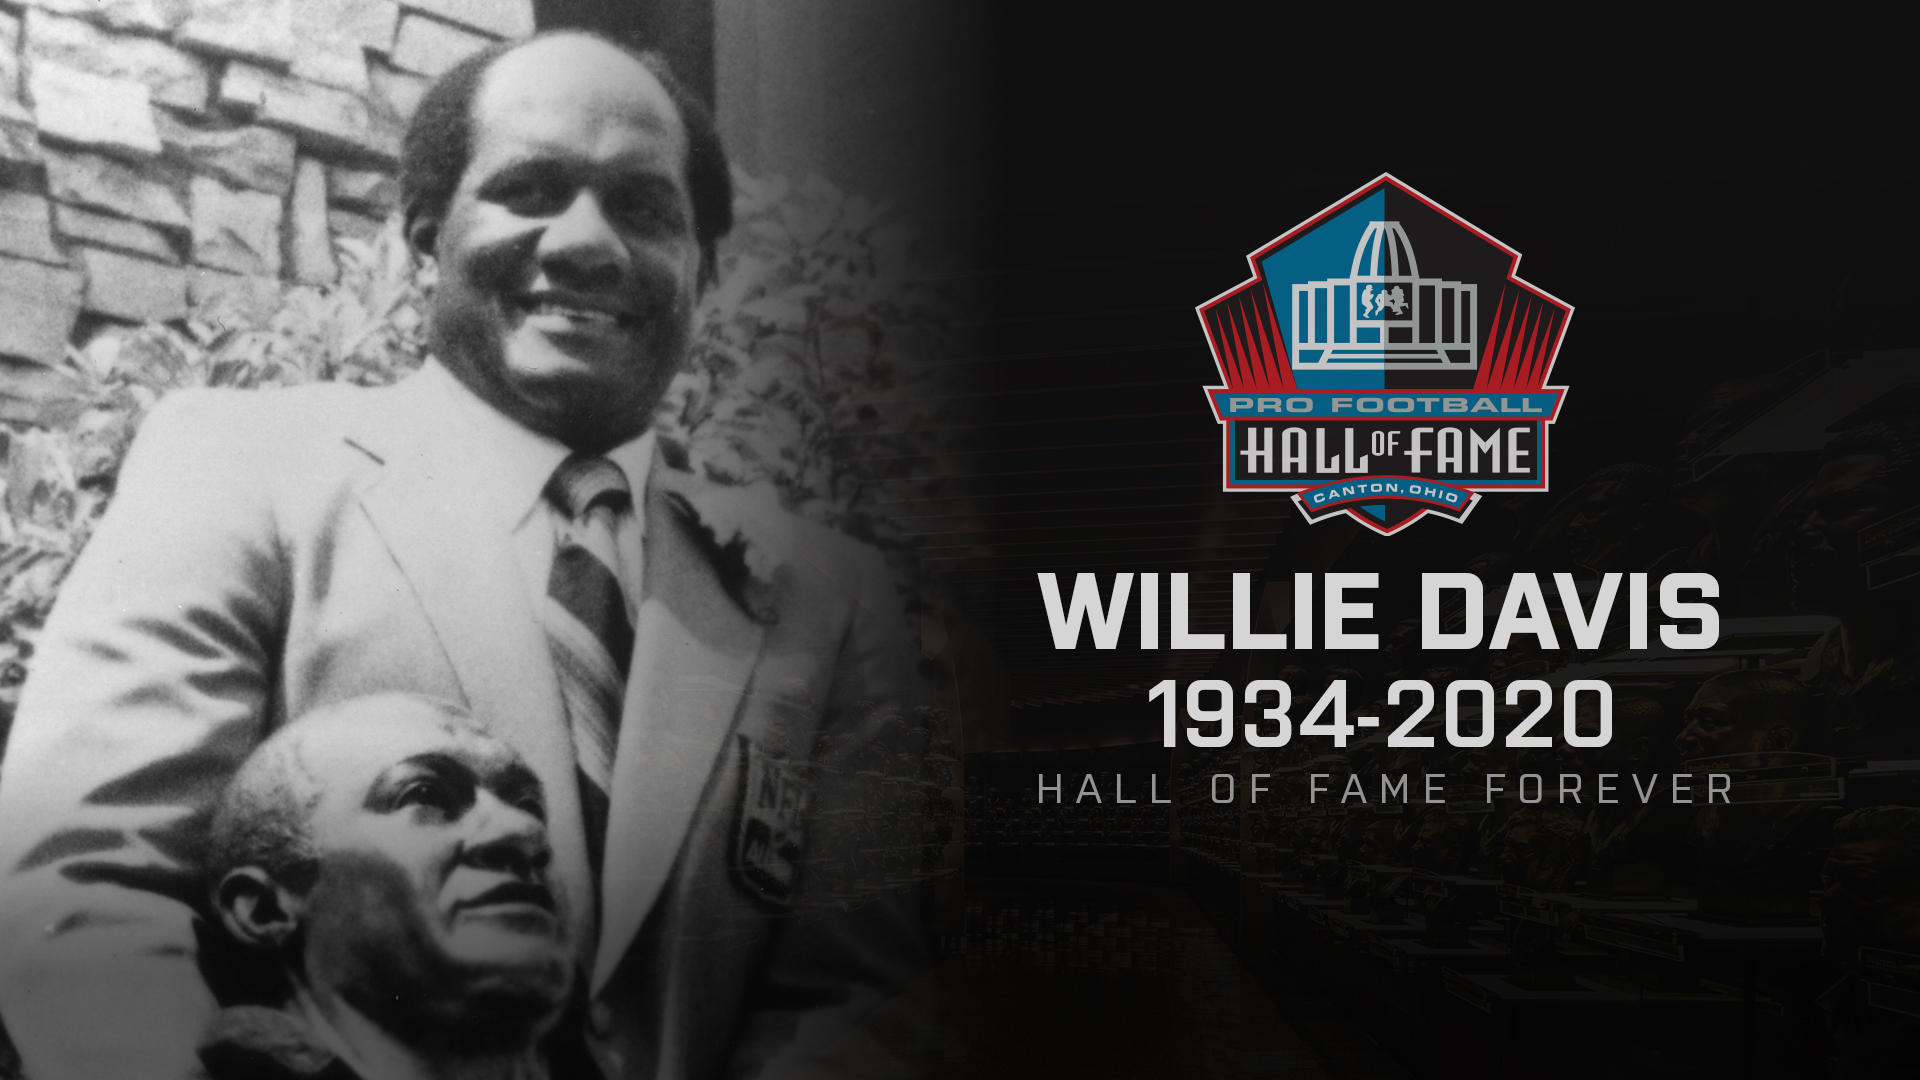 NFL Hall of Famer Willie Davis passes away_50.1